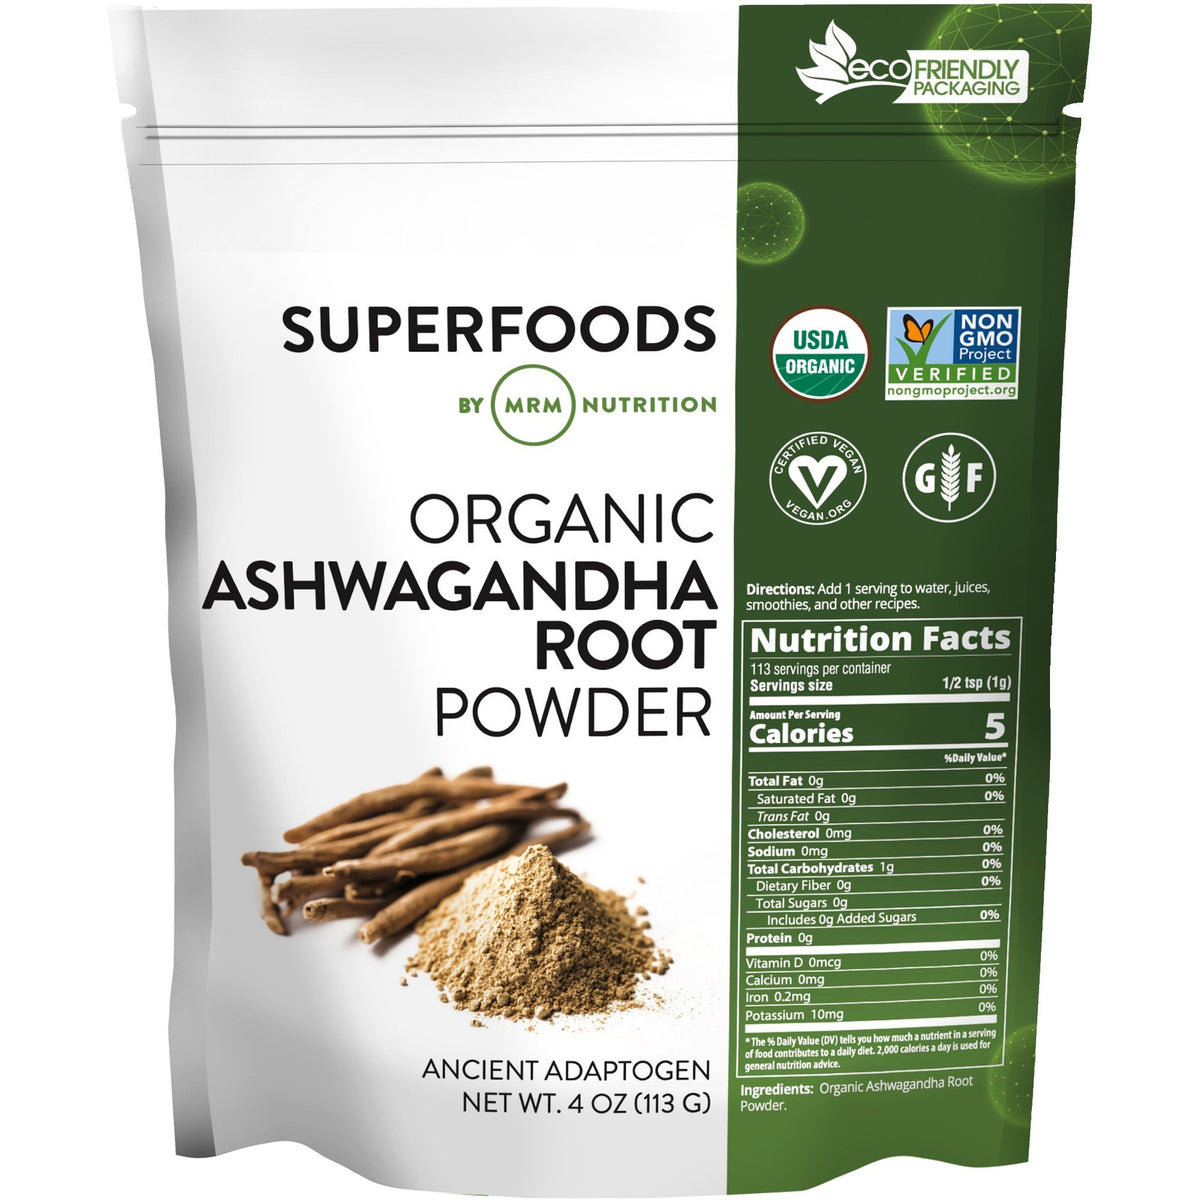 MRM (Metabolic Response Modifiers) Super Foods - Organic Ashwagandha Roots Powder 4 oz Powder